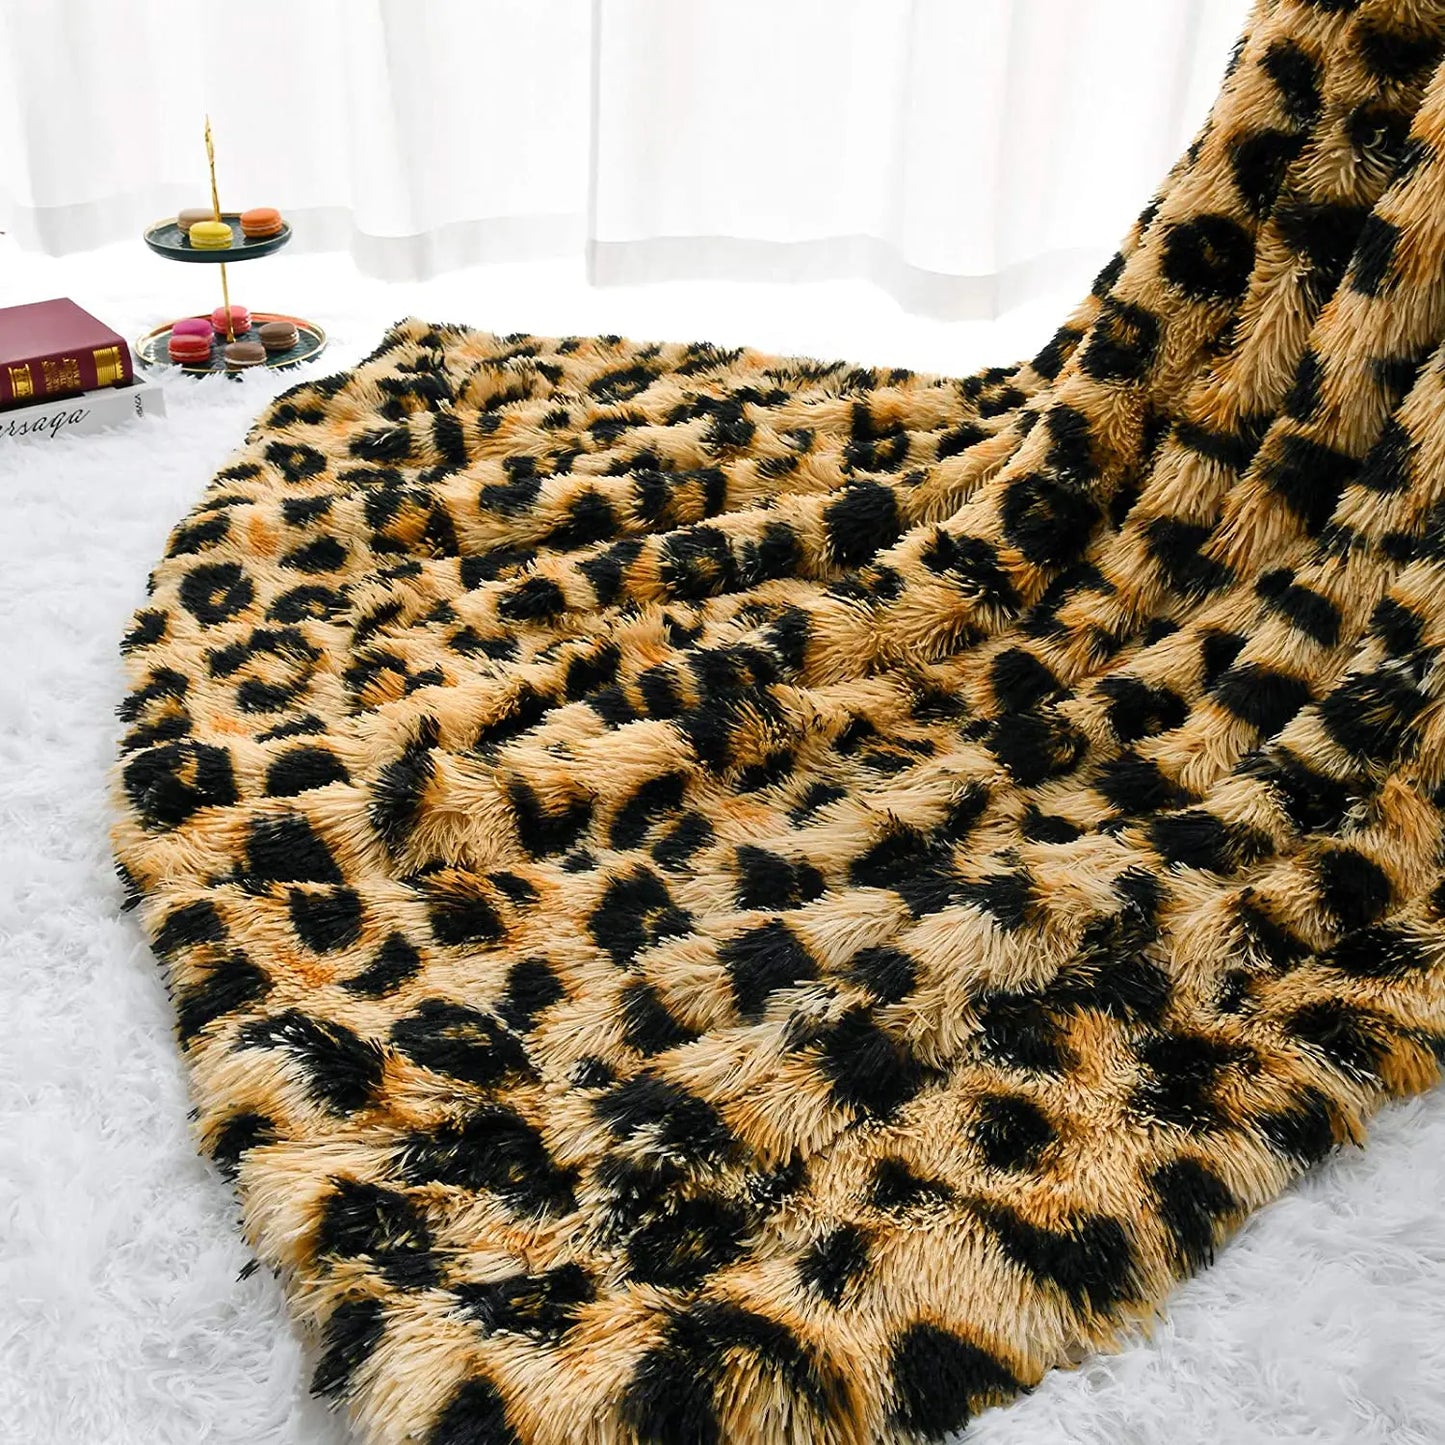 Luxus leopárd öltéses dobás takaró szoba dekoráció Plaid ágytakaró baba takarók szőrös téli ágytakarók kanapé burkolat nagy vastag szőrös